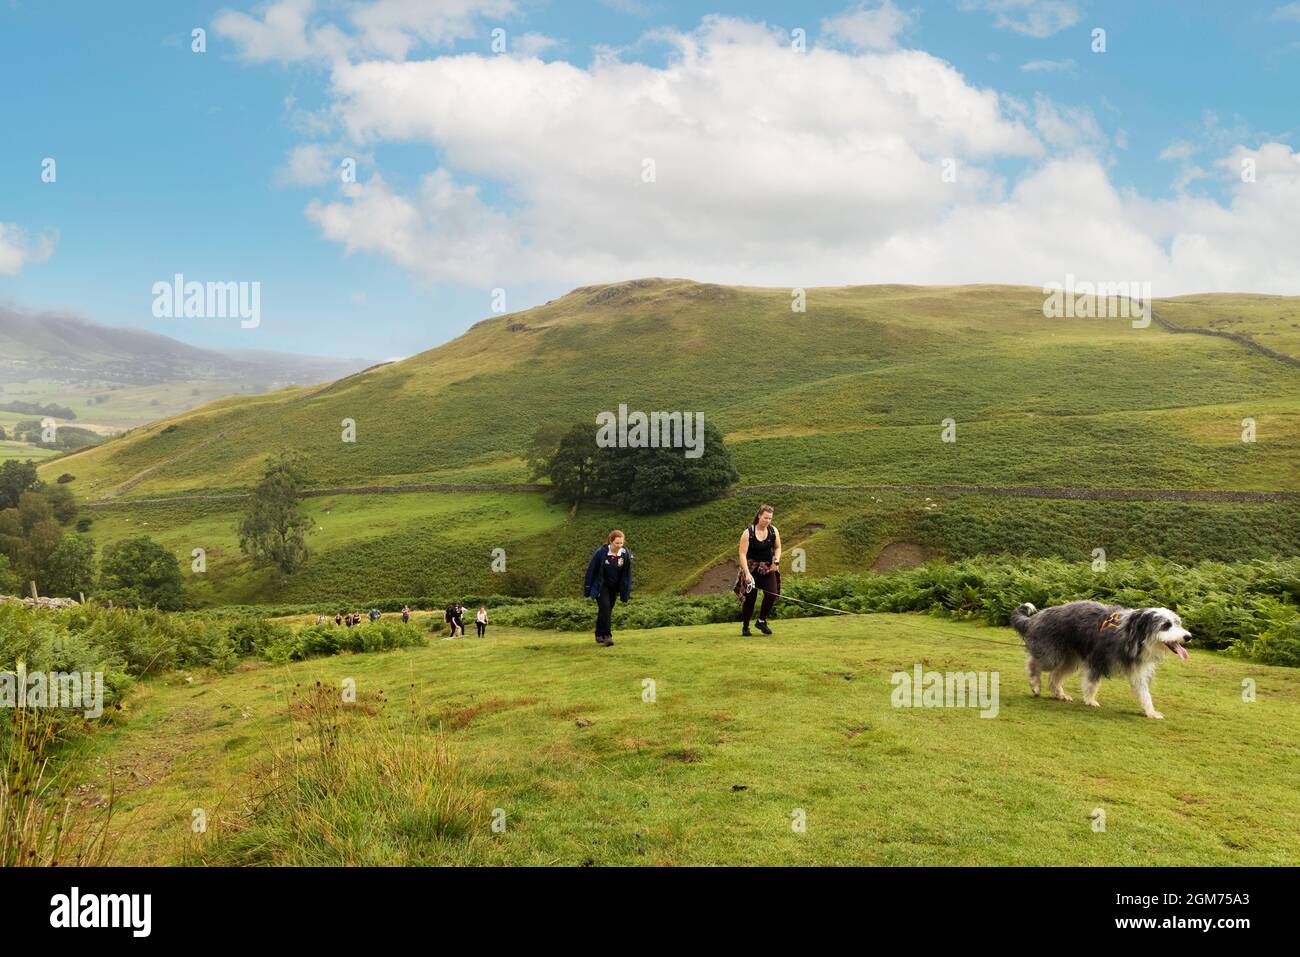 Chien marchant dans le Lake District - personnes marchant le chien dans la campagne anglaise, Walla Crag, Keswick, Lake District National Park, Cumbria Angleterre Royaume-Uni Banque D'Images